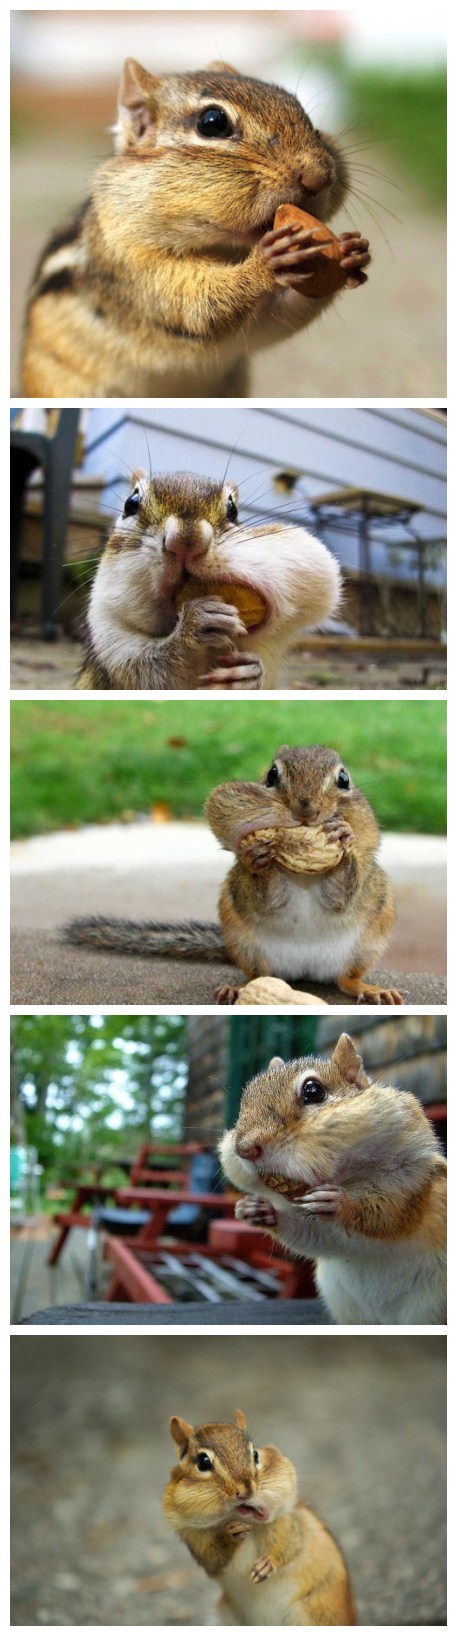 可爱的小松鼠吃东西